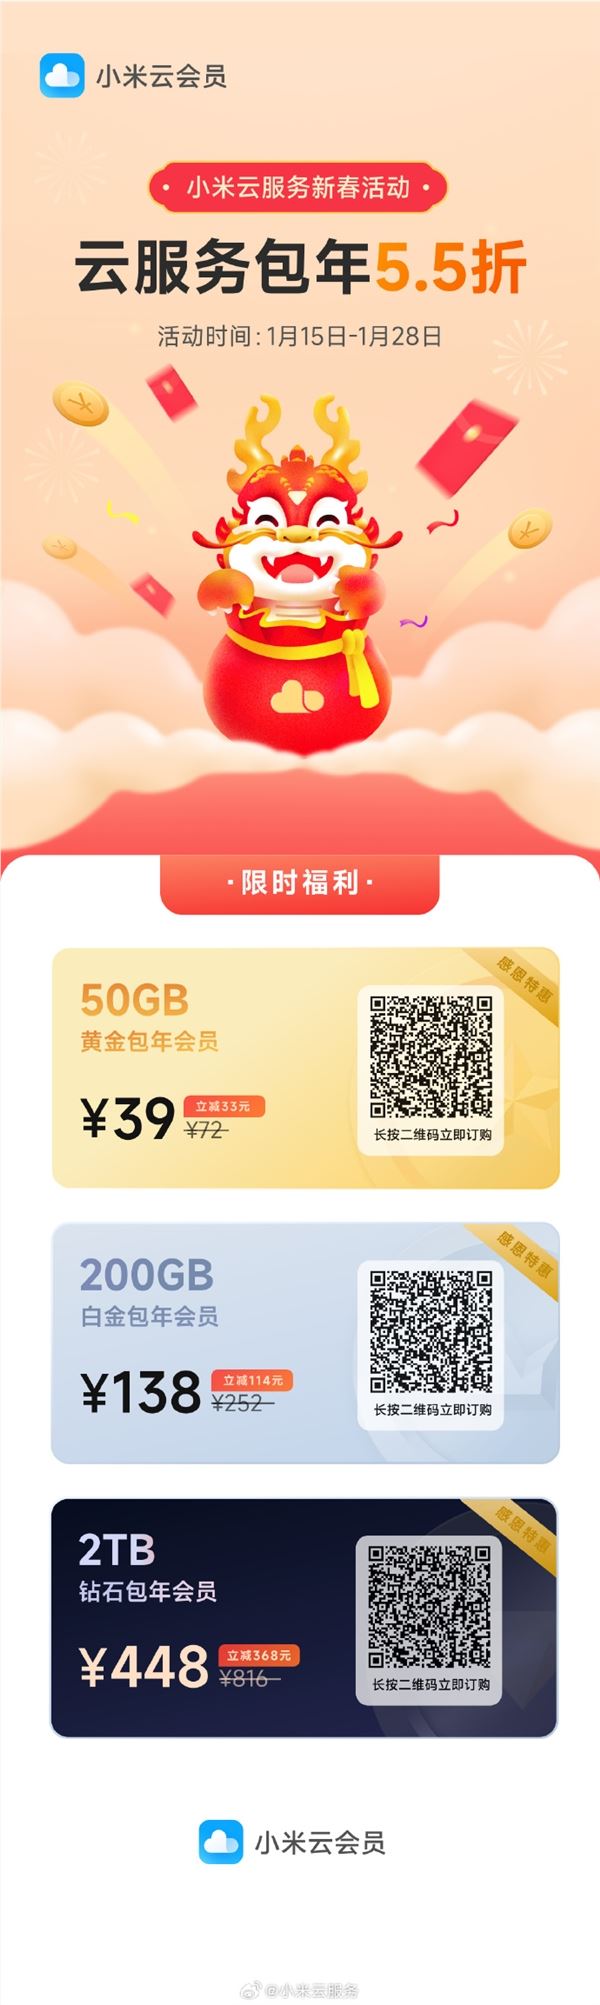 小米云服务新春活动公布：200GB连续包年 138 元